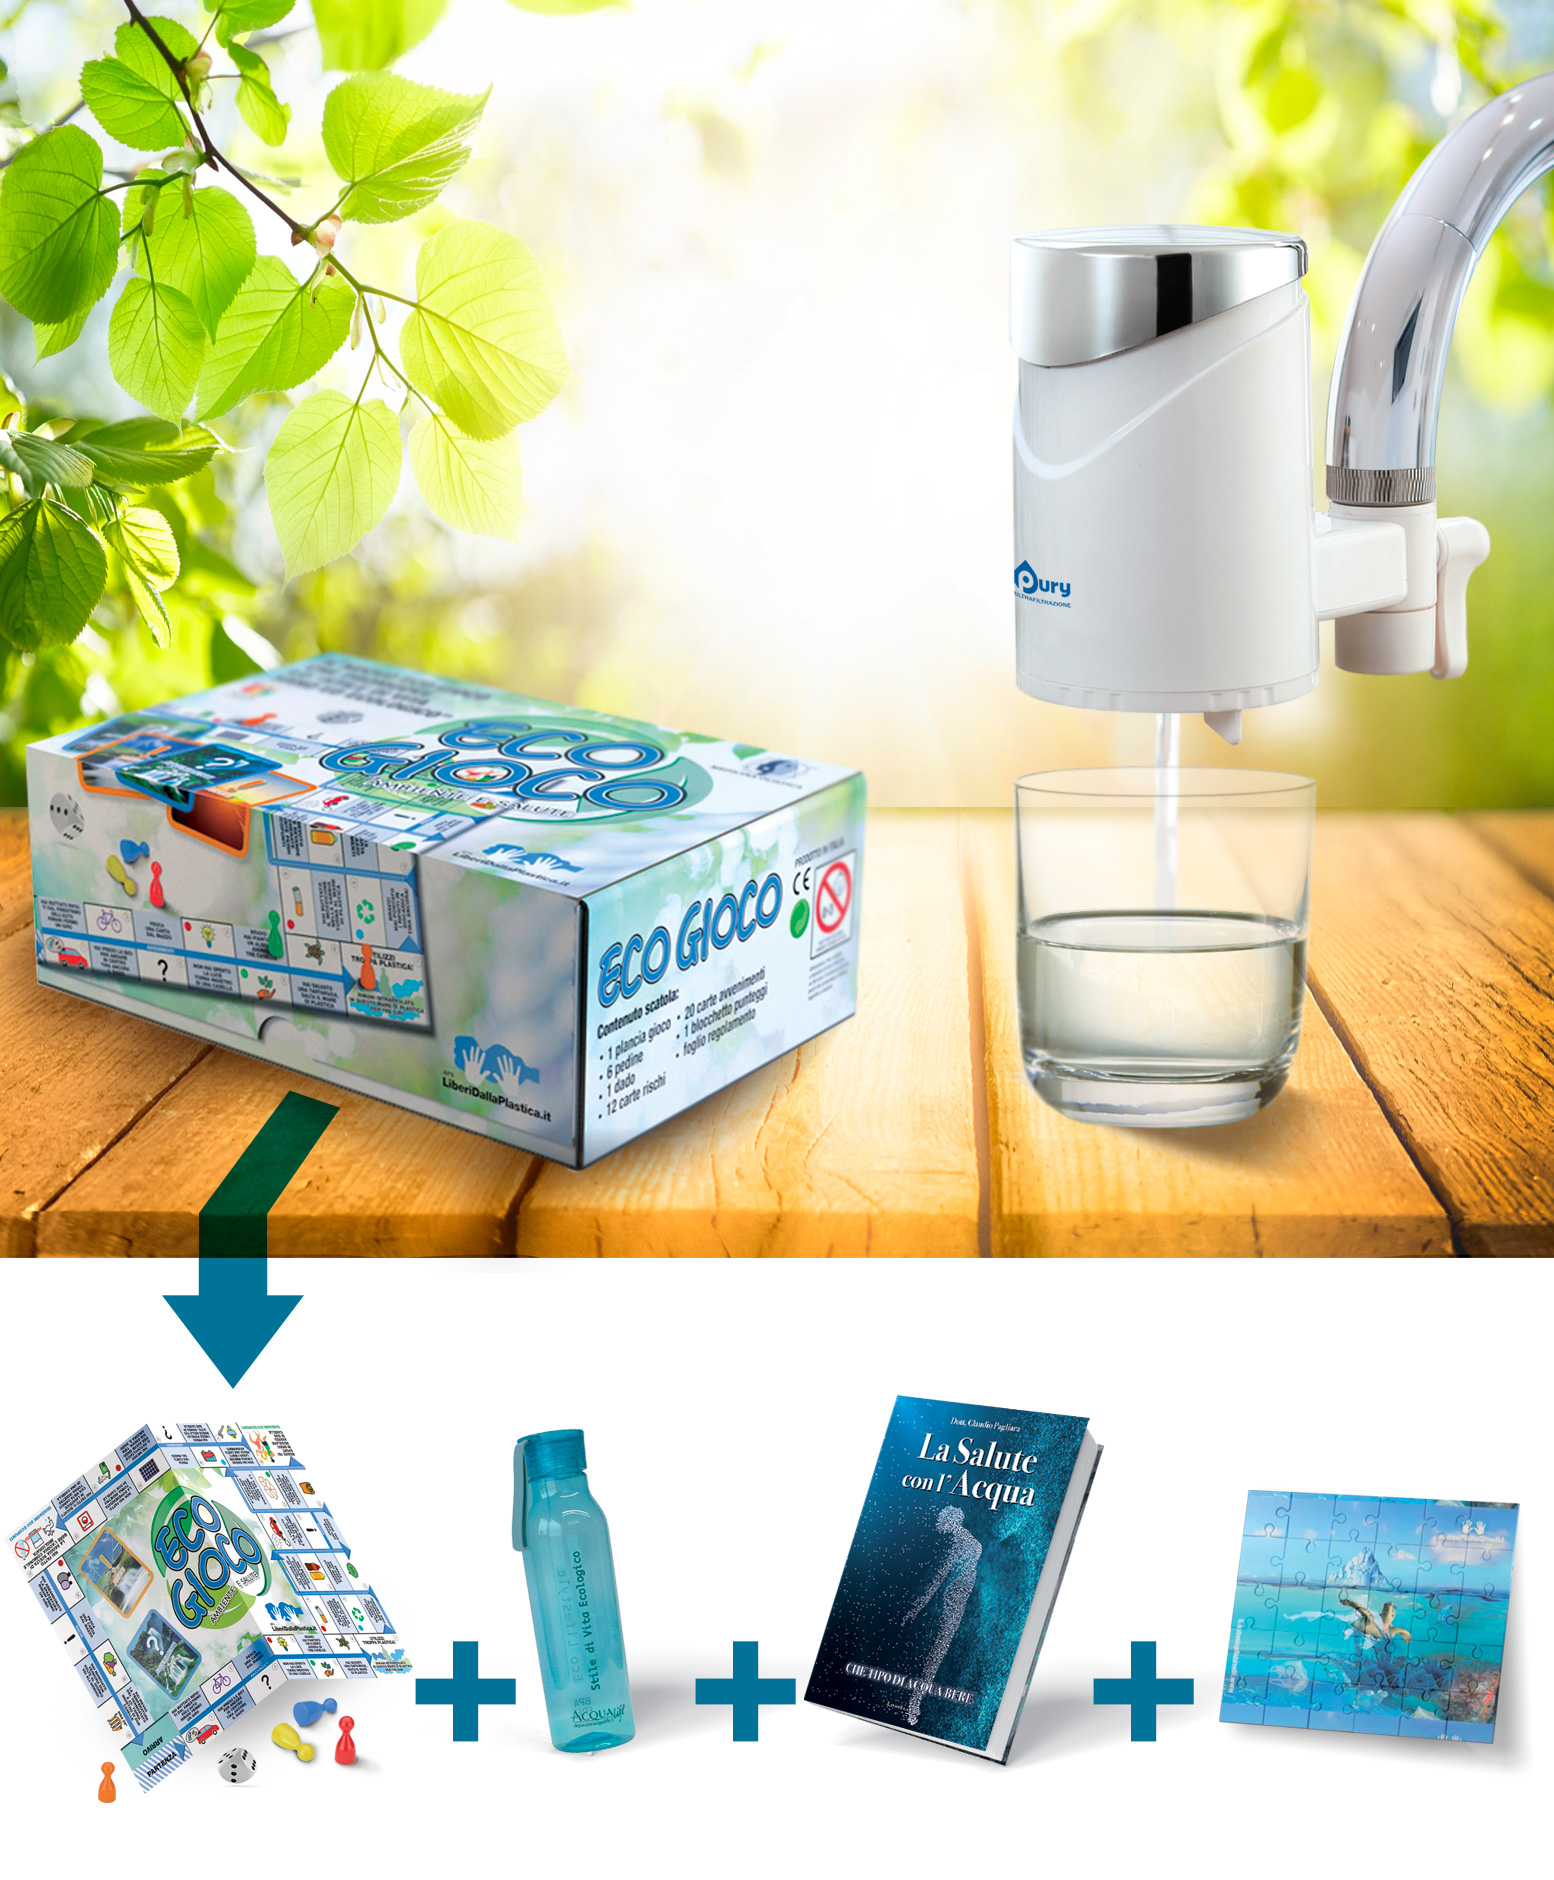 pury per acqua pura dal rubinetto di casa con omaggio il kit ecologico